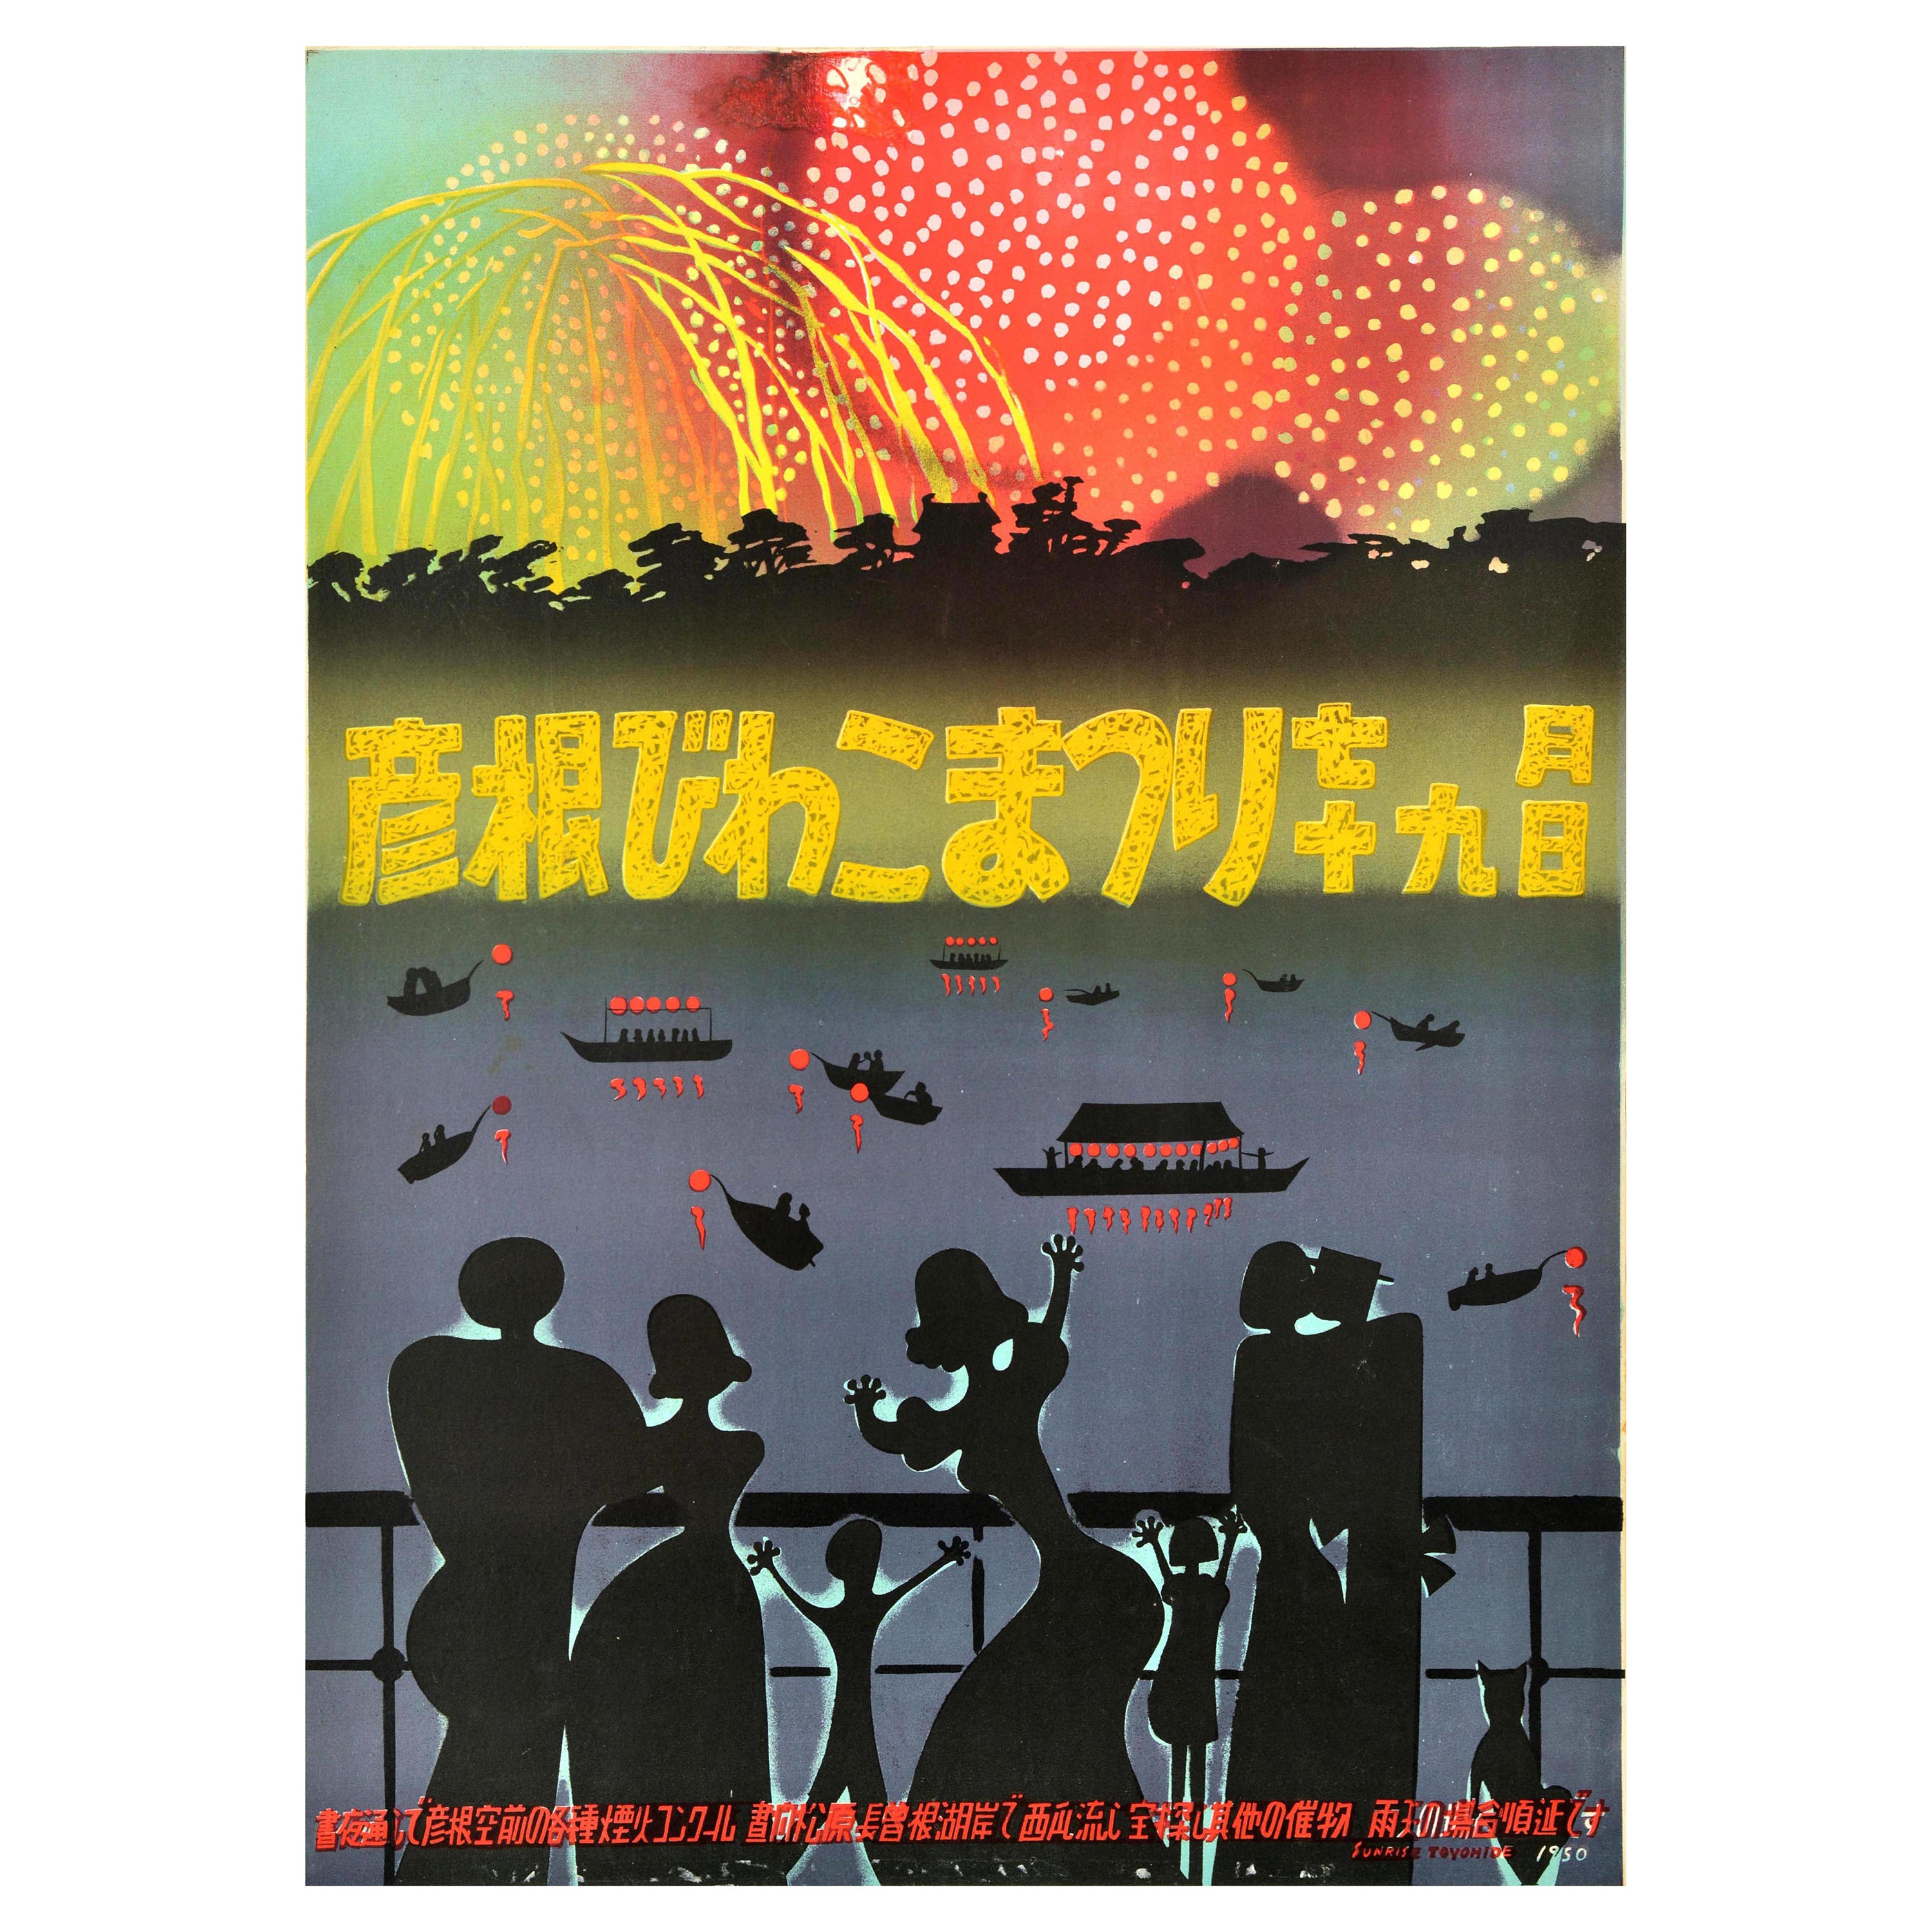 Original-Vintage-Reiseplakat Hikone Biwako Feuerwerk Festival Japan See Biwa